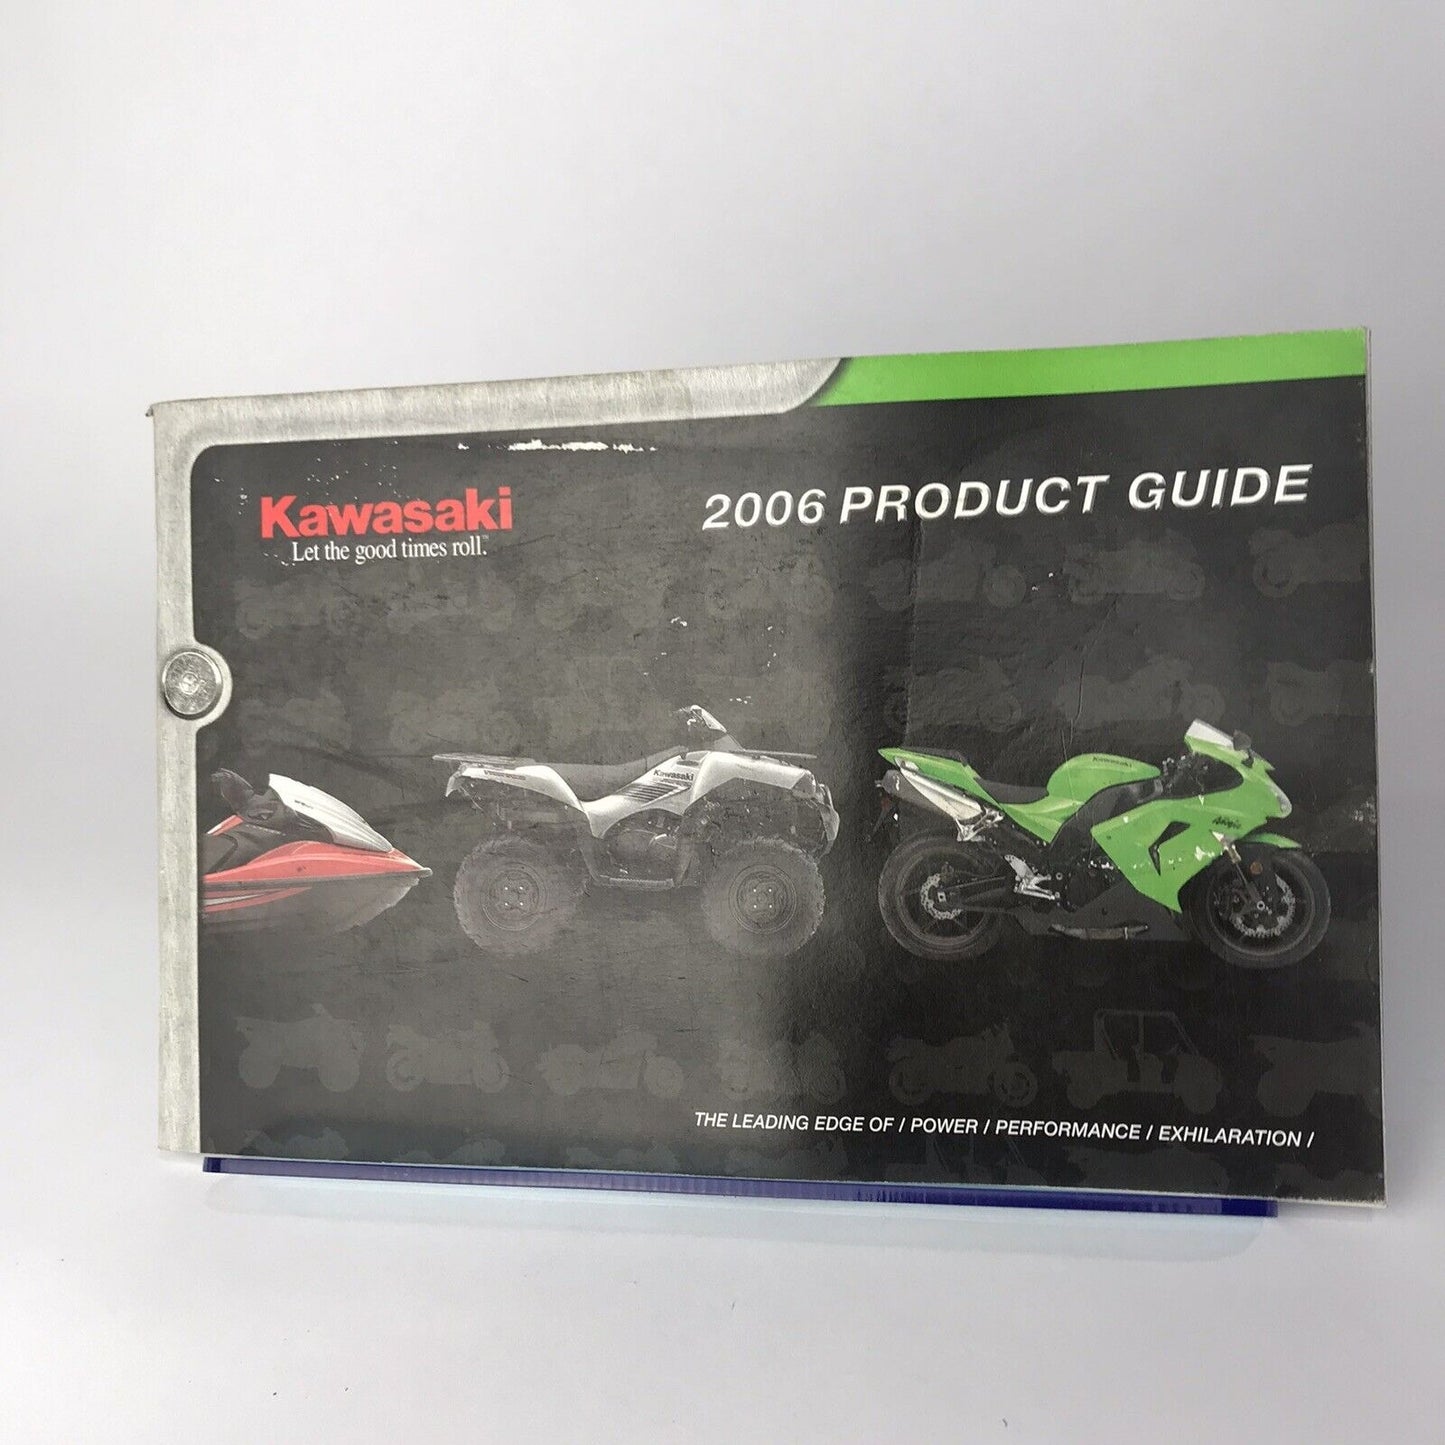 2006 Kawasaki Product Guide Catalog Manual Motorcycle ATV